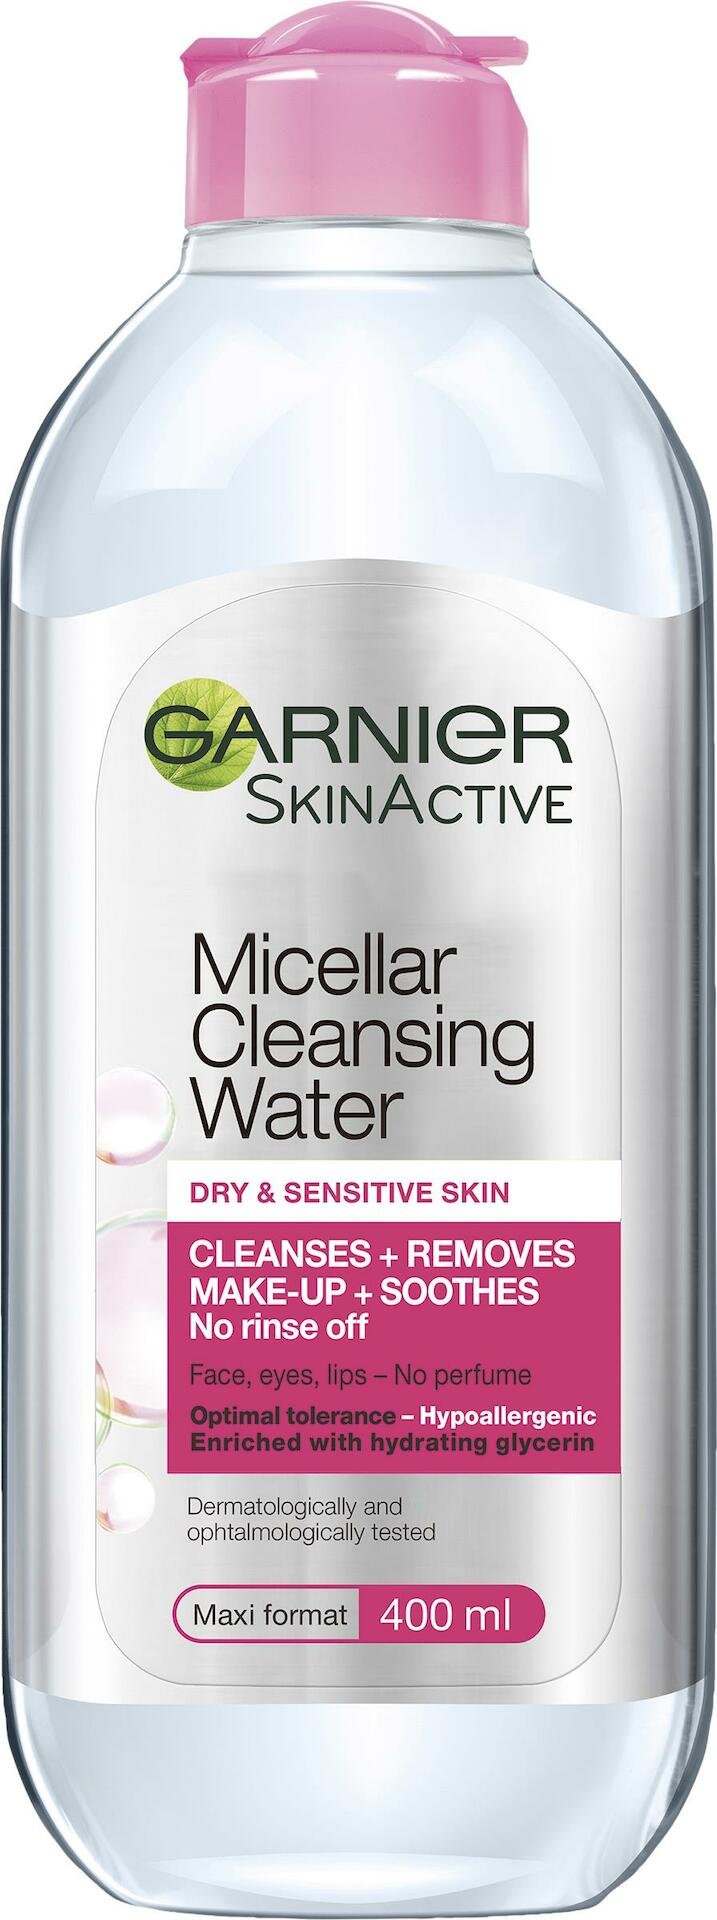 Garnier SkinActiveMicellar Cleansing Water Dry & Sensitive Skin 400 ml